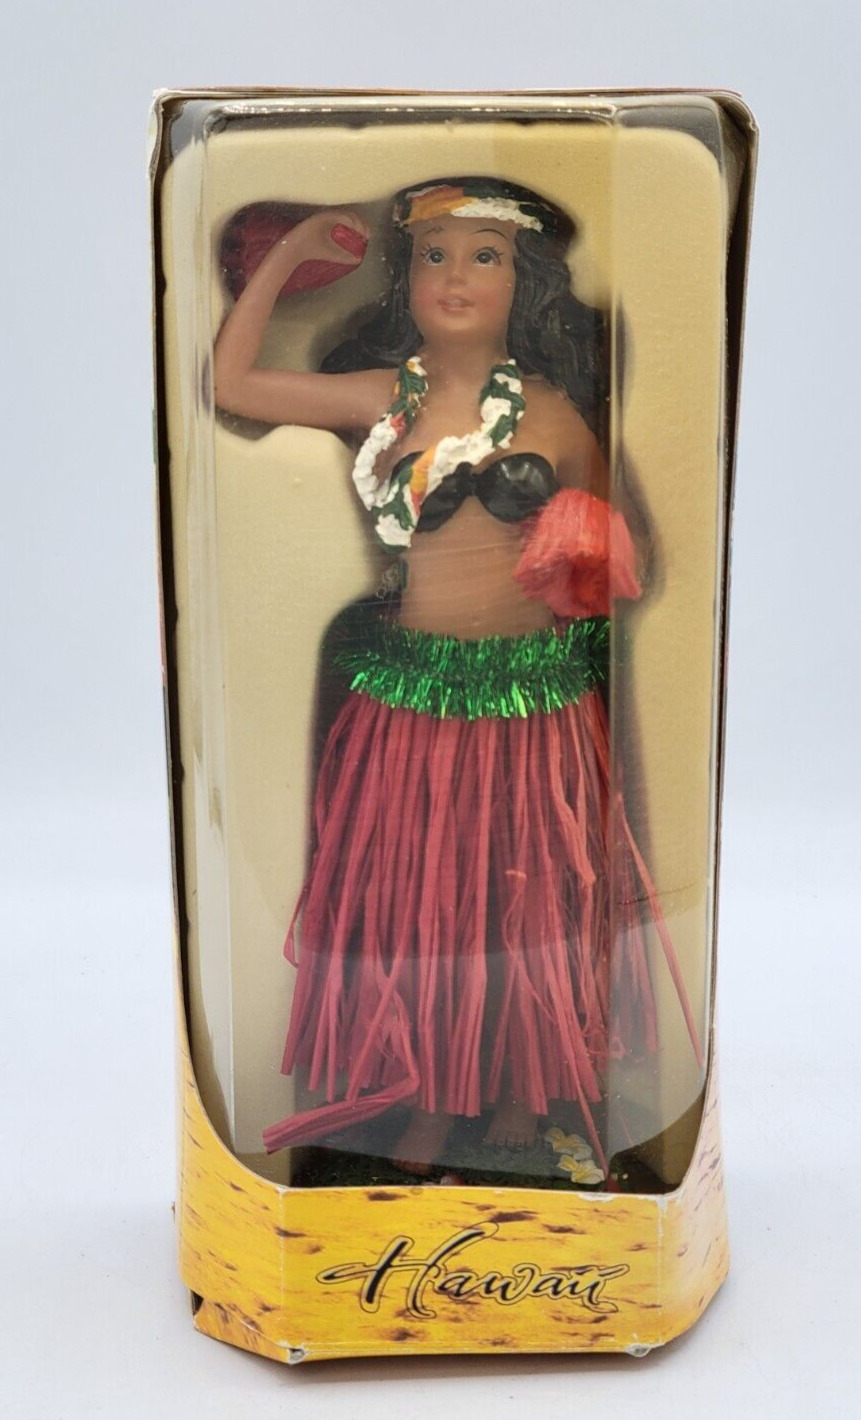 Chiefly Co Hawaiian Dashboard Hula Dancer Girl Red Grass Hula Skirt K2244